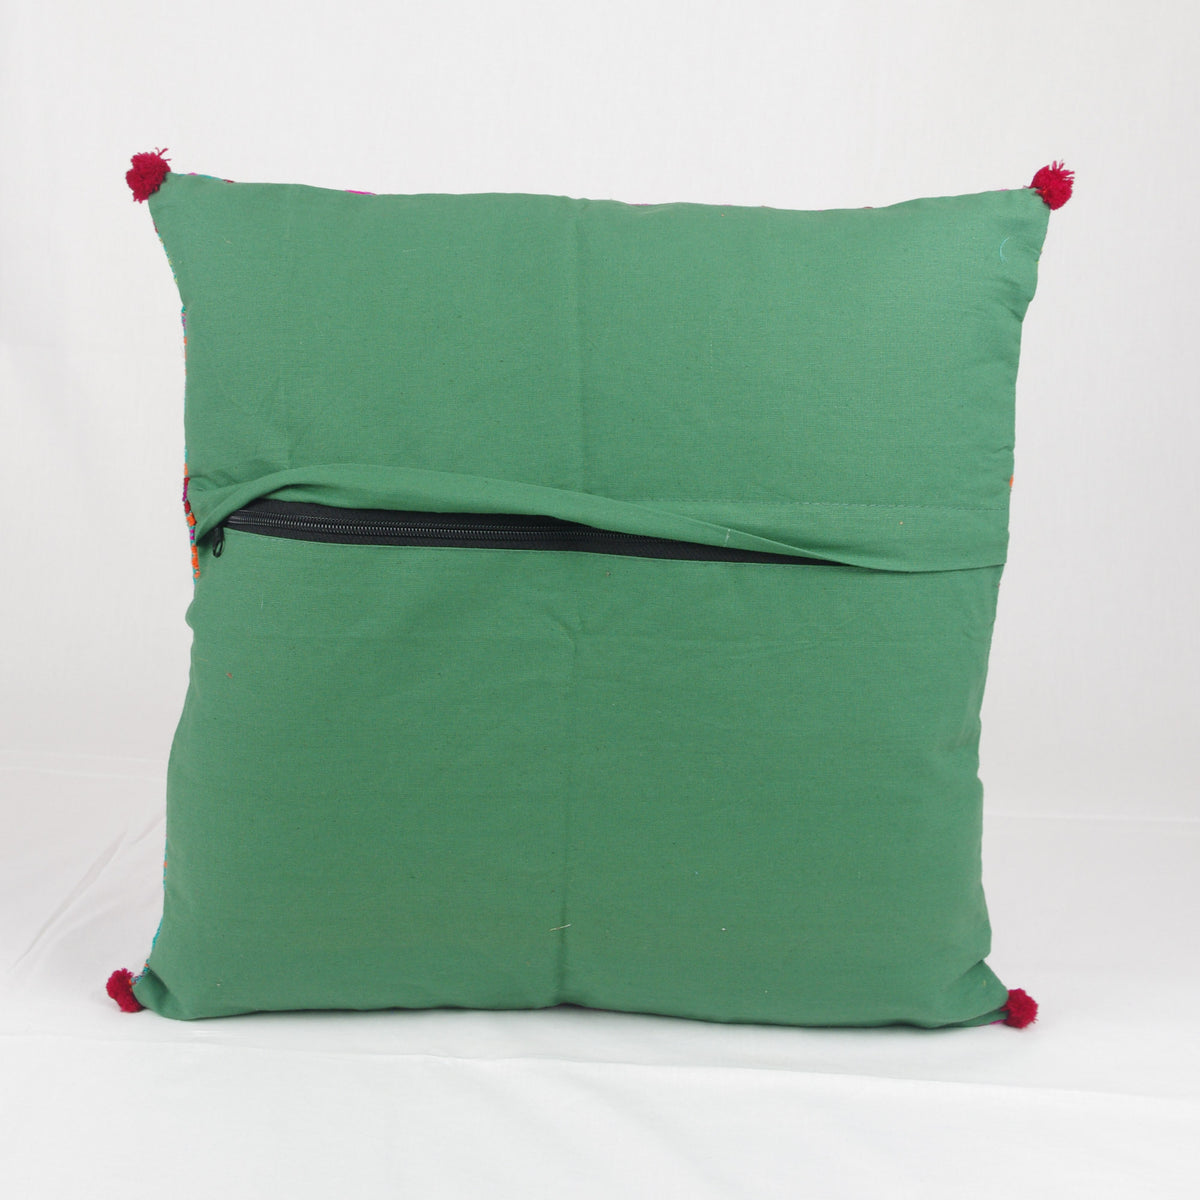 Bohemian Handloom Cotton Cushion Cover - Multicolour Green